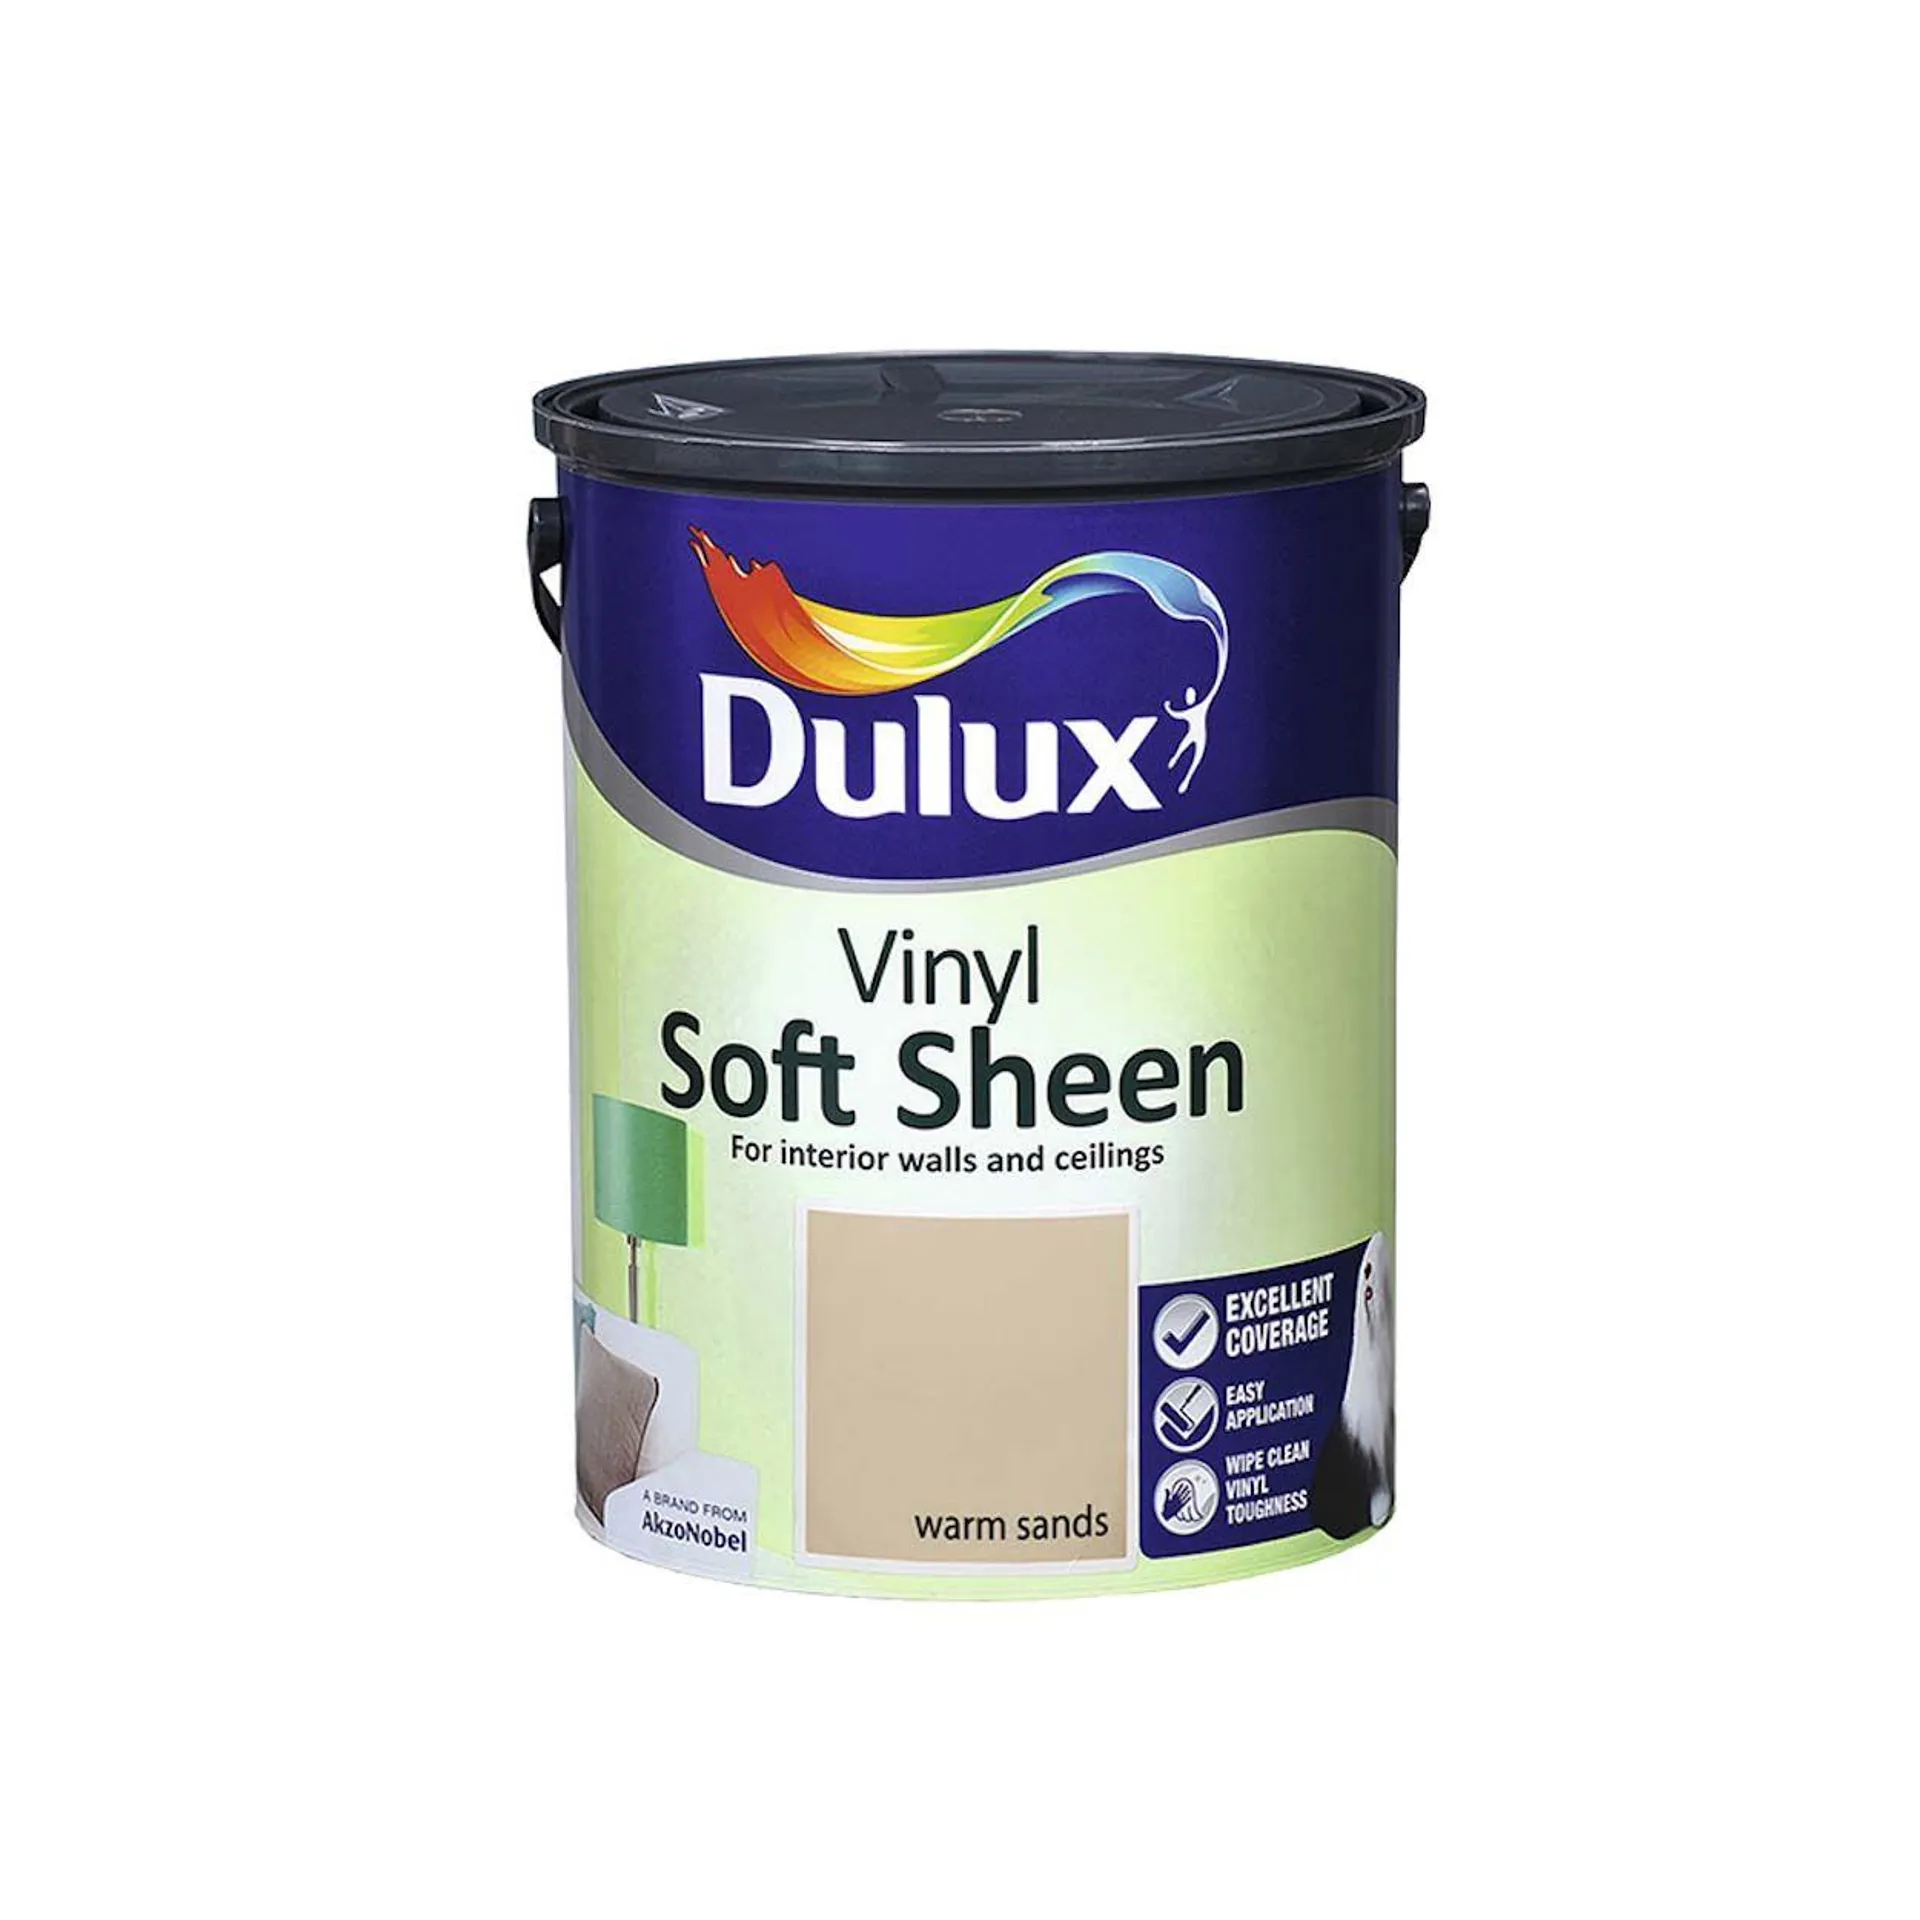 Dulux Vinyl Soft Sheen Warm Sands 5L